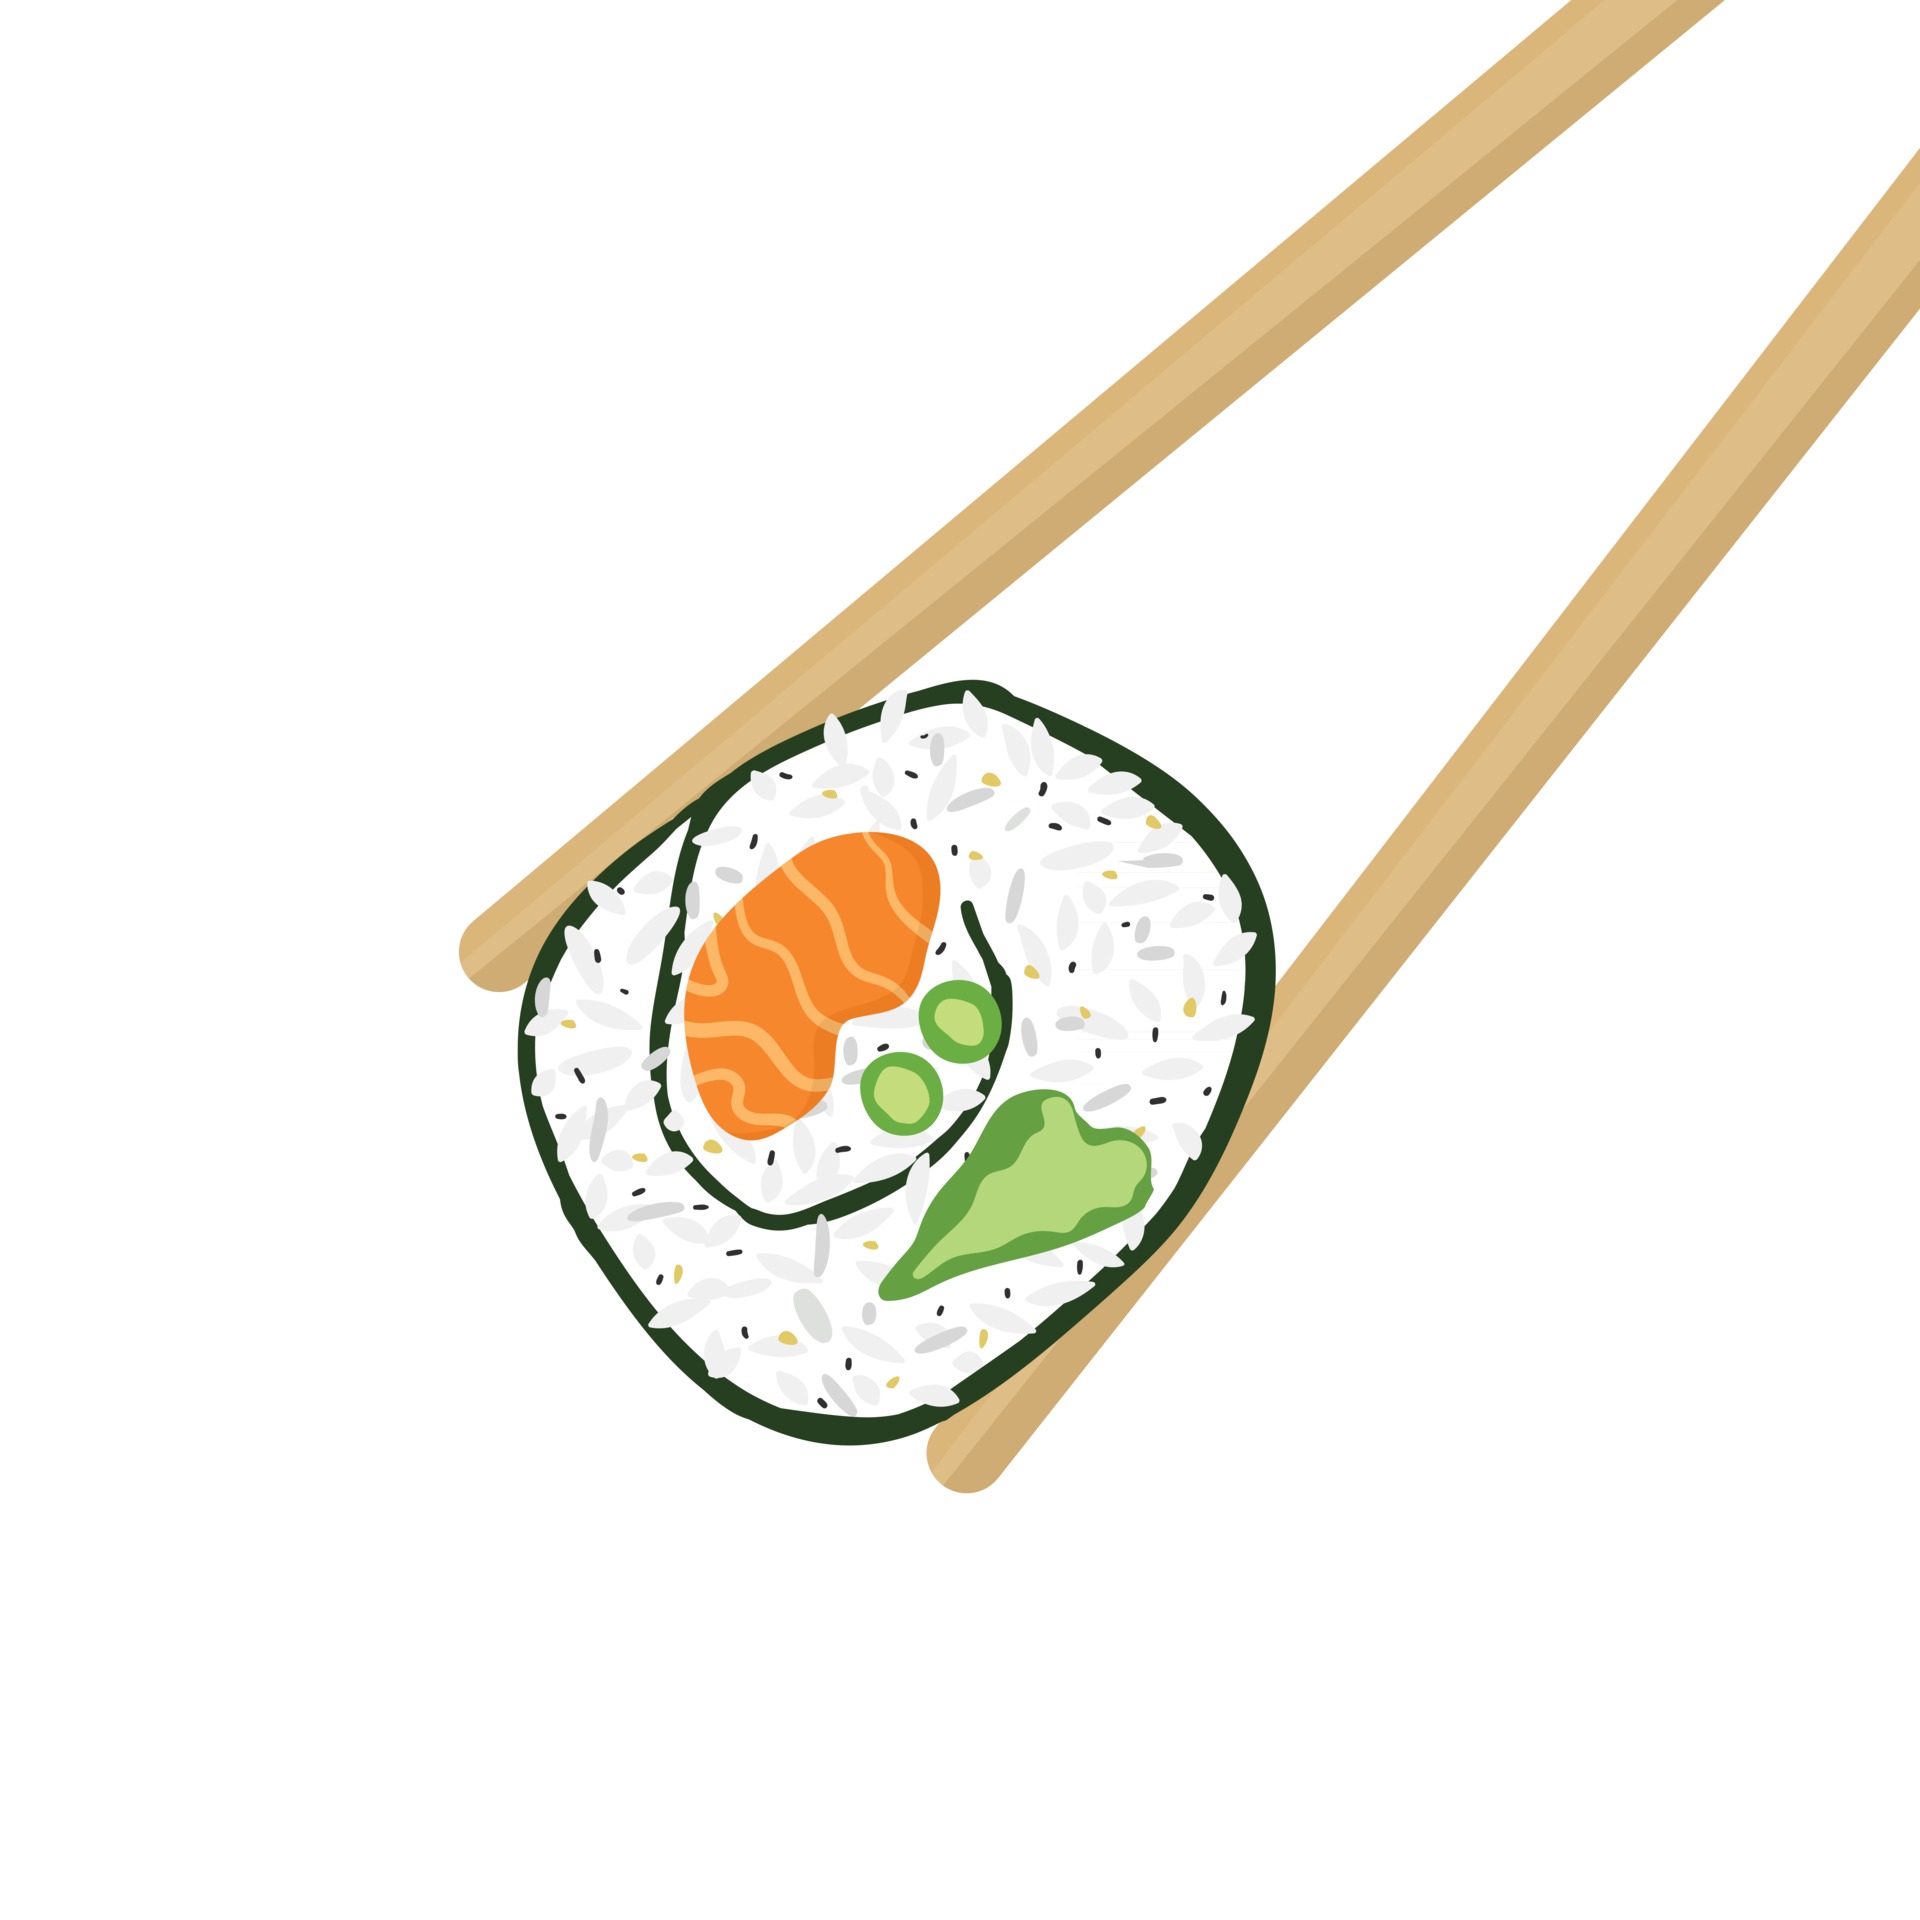 baguettes en bois et rouleau de sushi sur fond blanc illustration 2579660  Art vectoriel chez Vecteezy